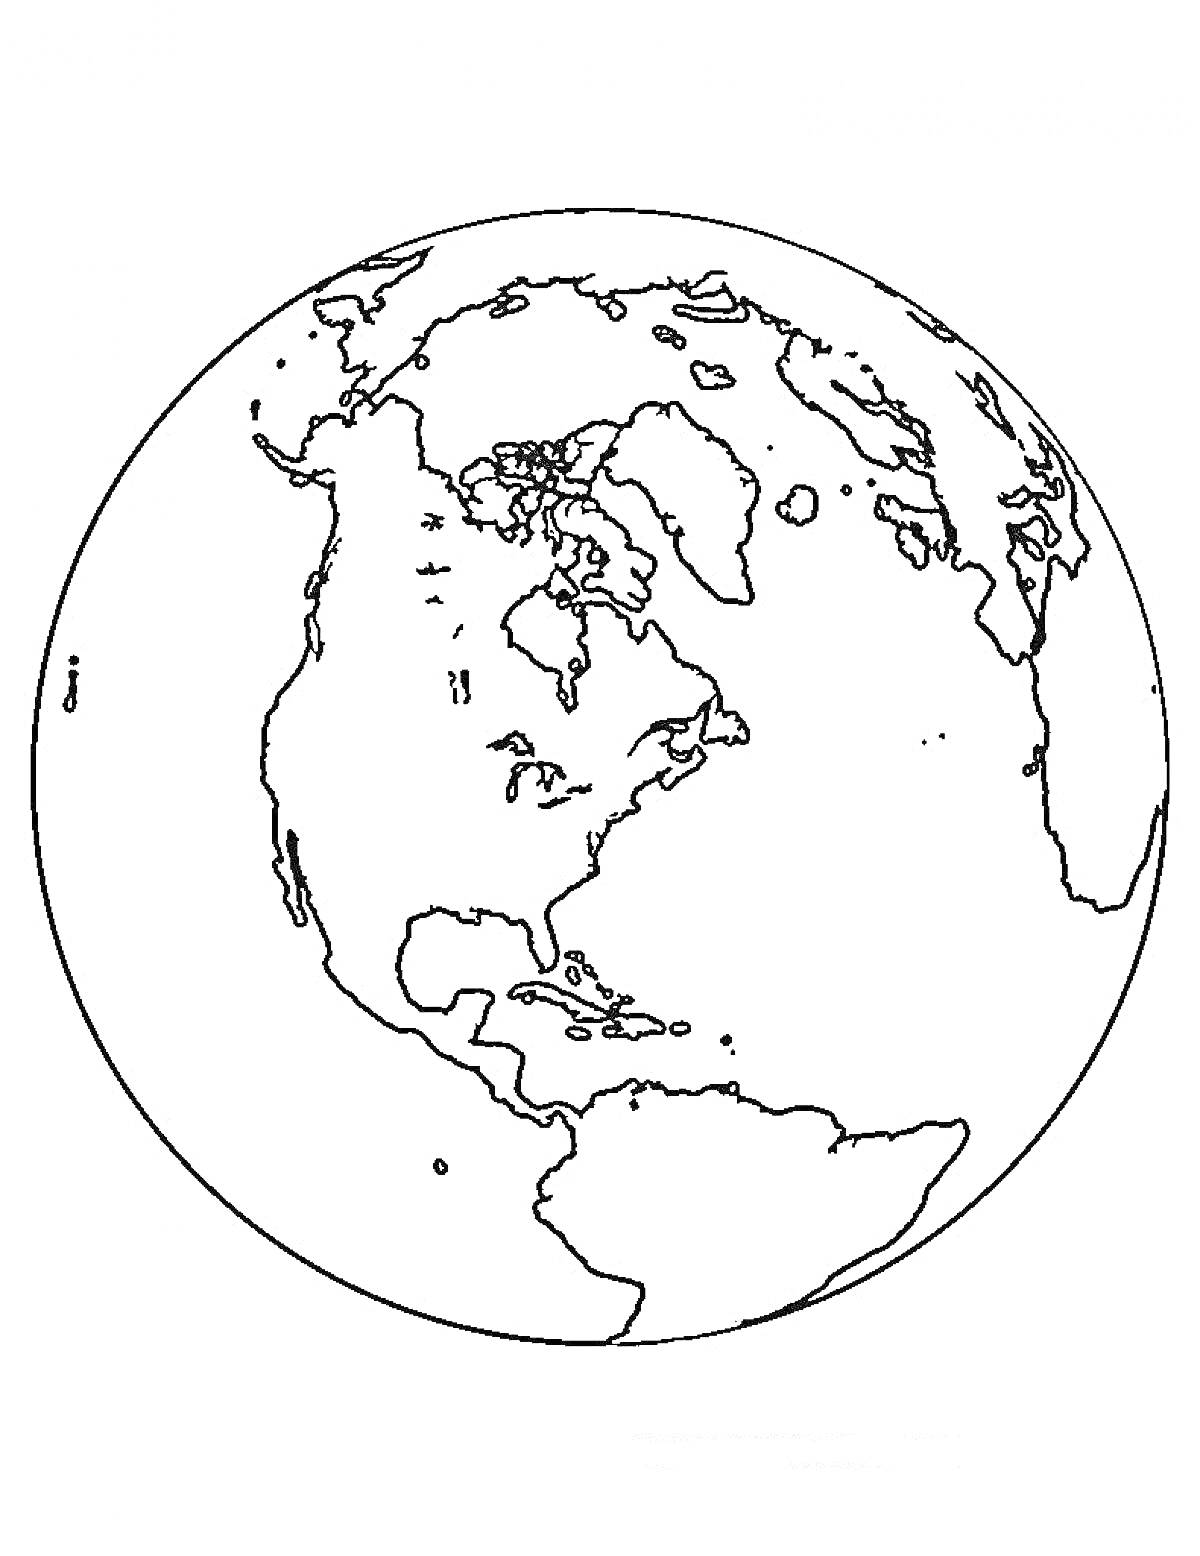 Континенты Северной и Южной Америки на земном шаре